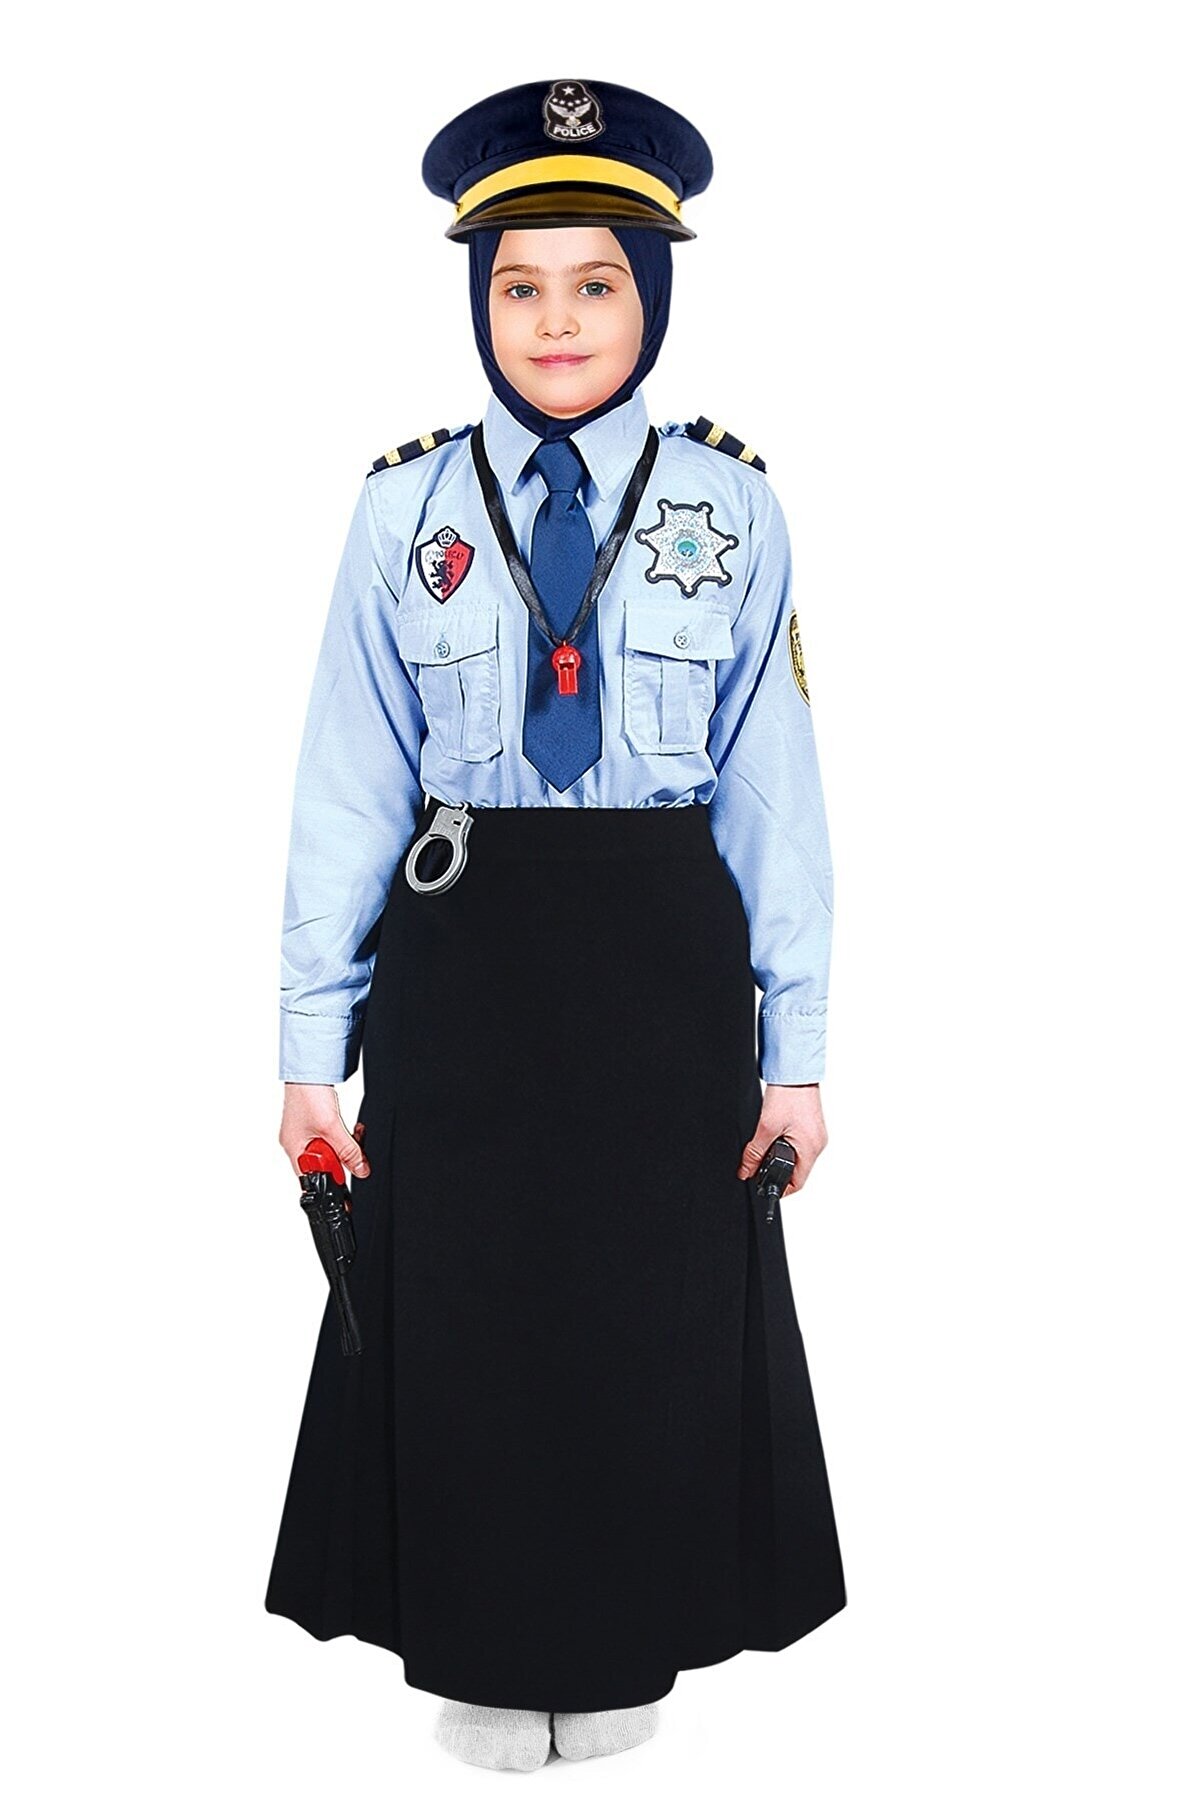 OULABİMİR Polis Kız Kostümü Çocuk Kıyafeti